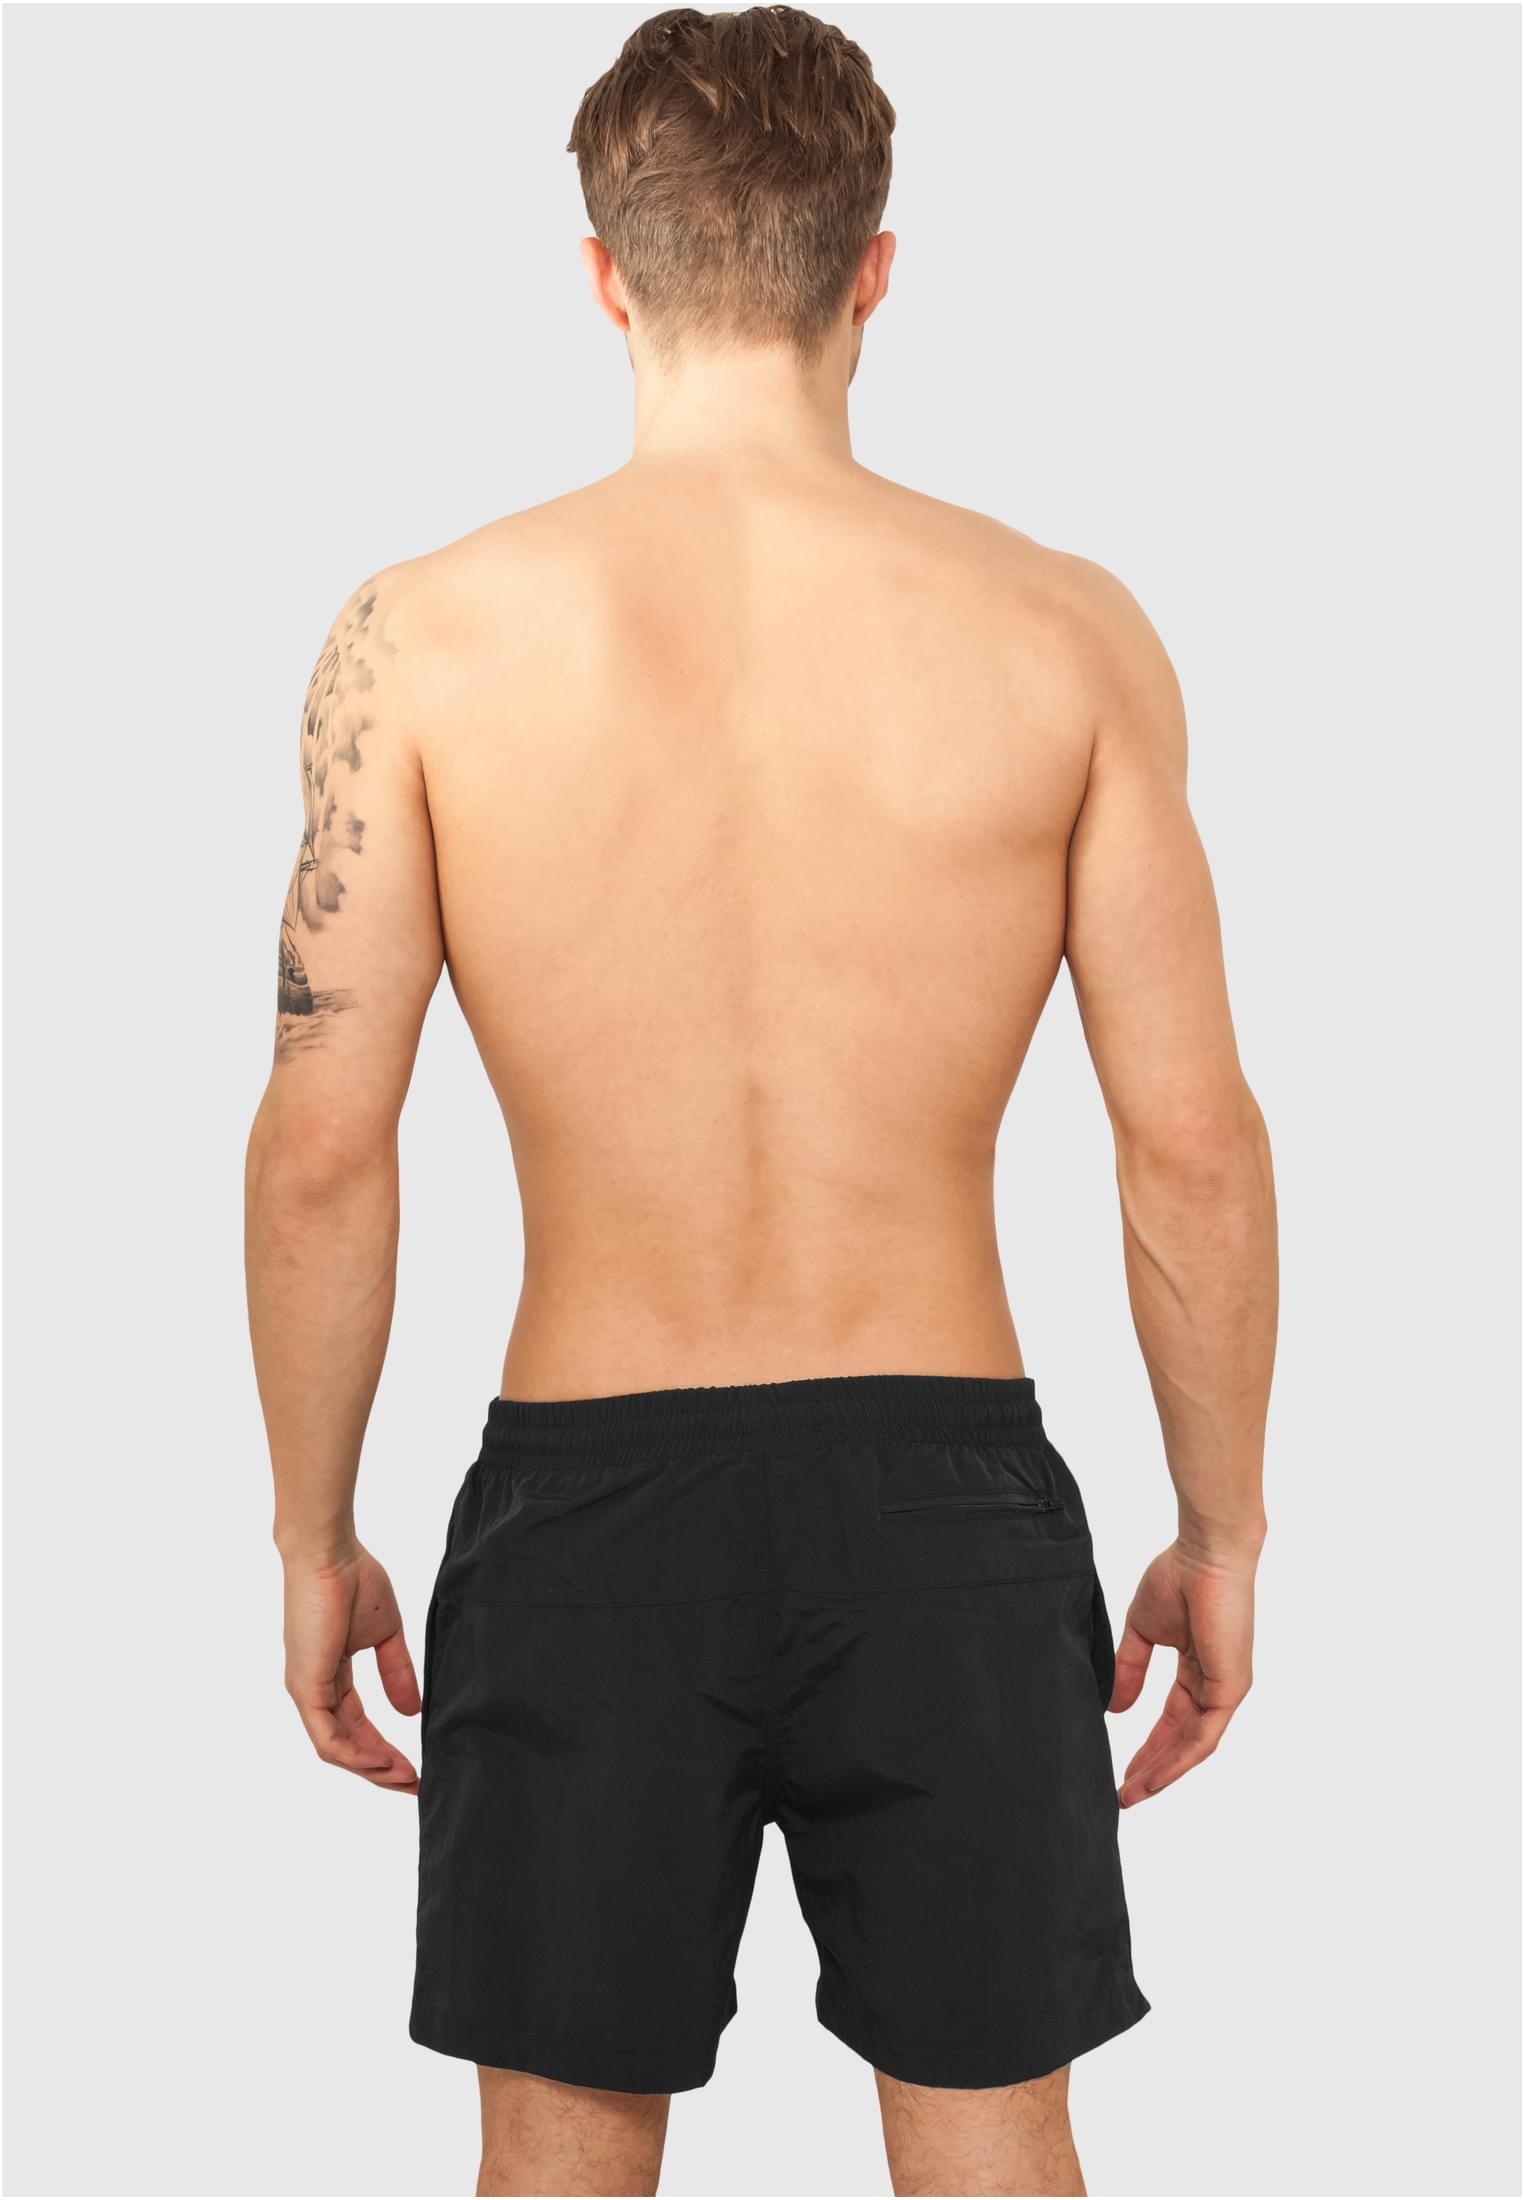 Plus Size Block Swim Shorts in Farbe blk/blk